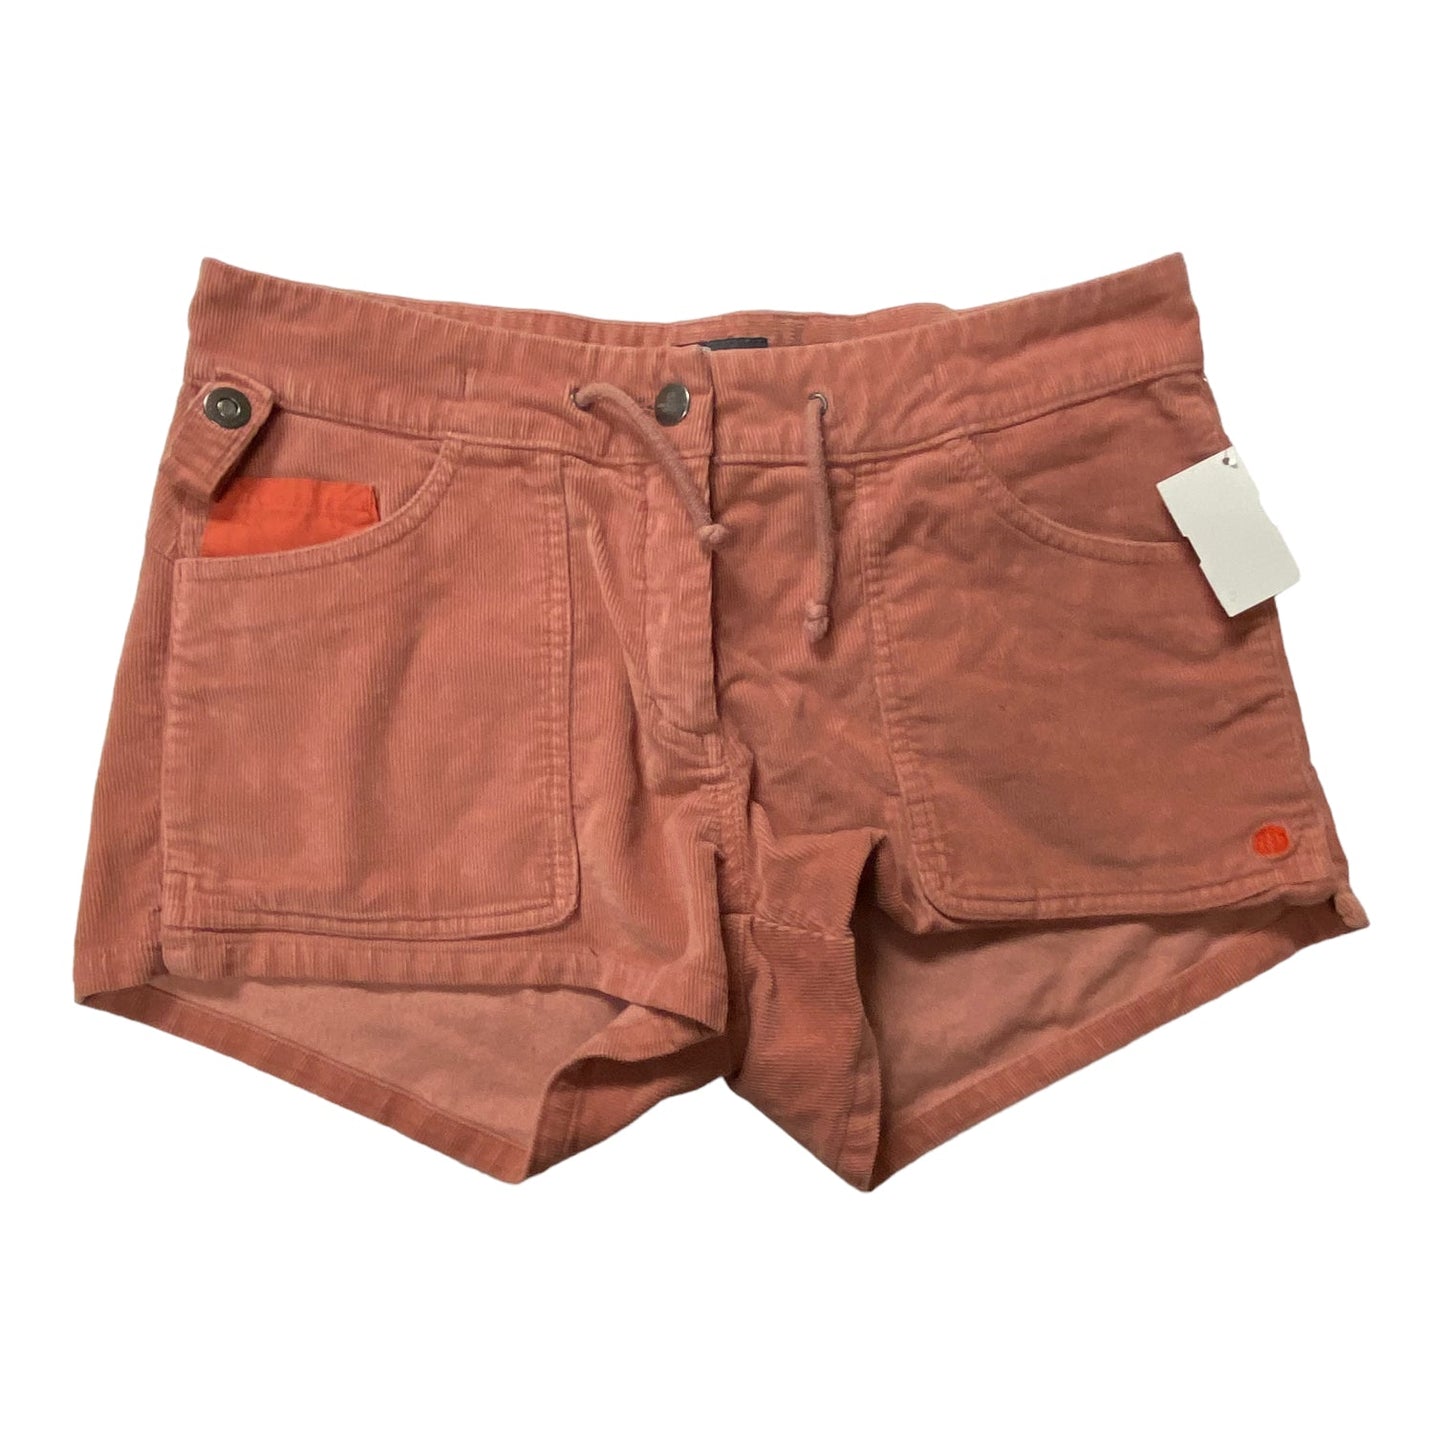 Pink Shorts AMUNDSEN - CORDUROY, Size M